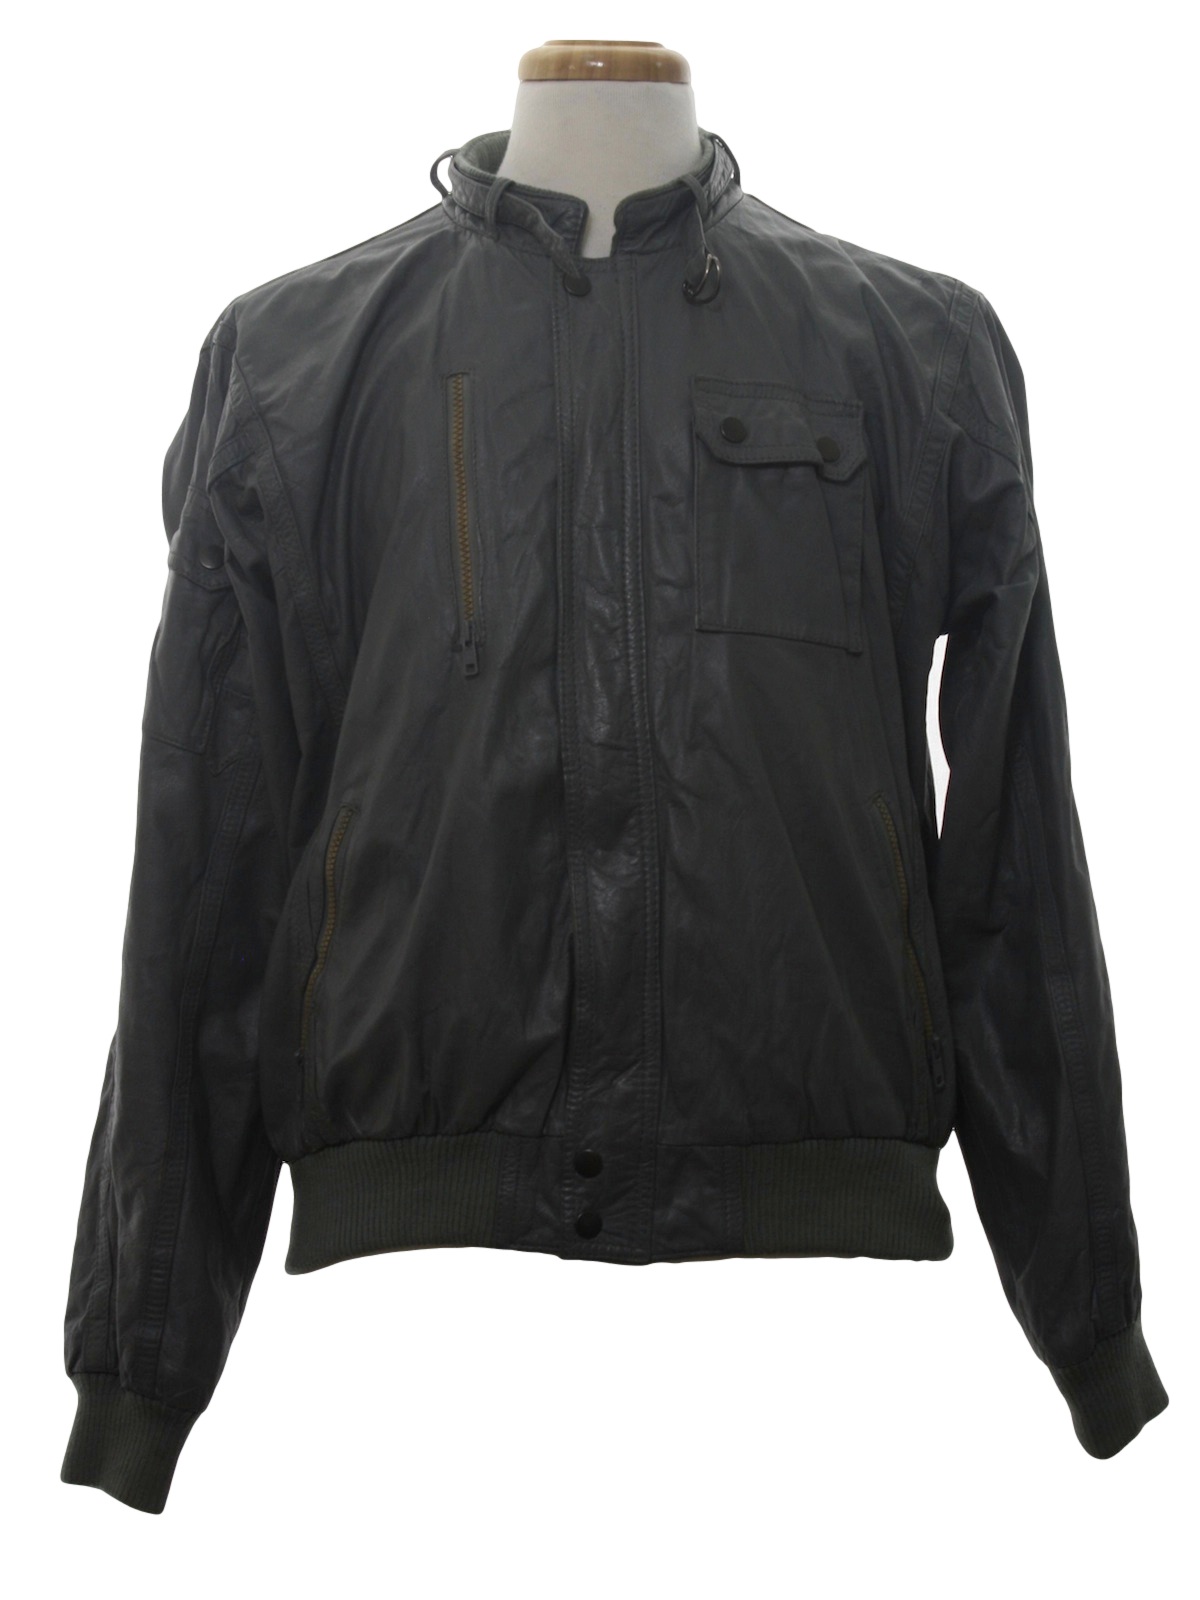 Wear Guard 1980s Vintage Leather Jacket: 80s -Wear Guard- Mens grey ...